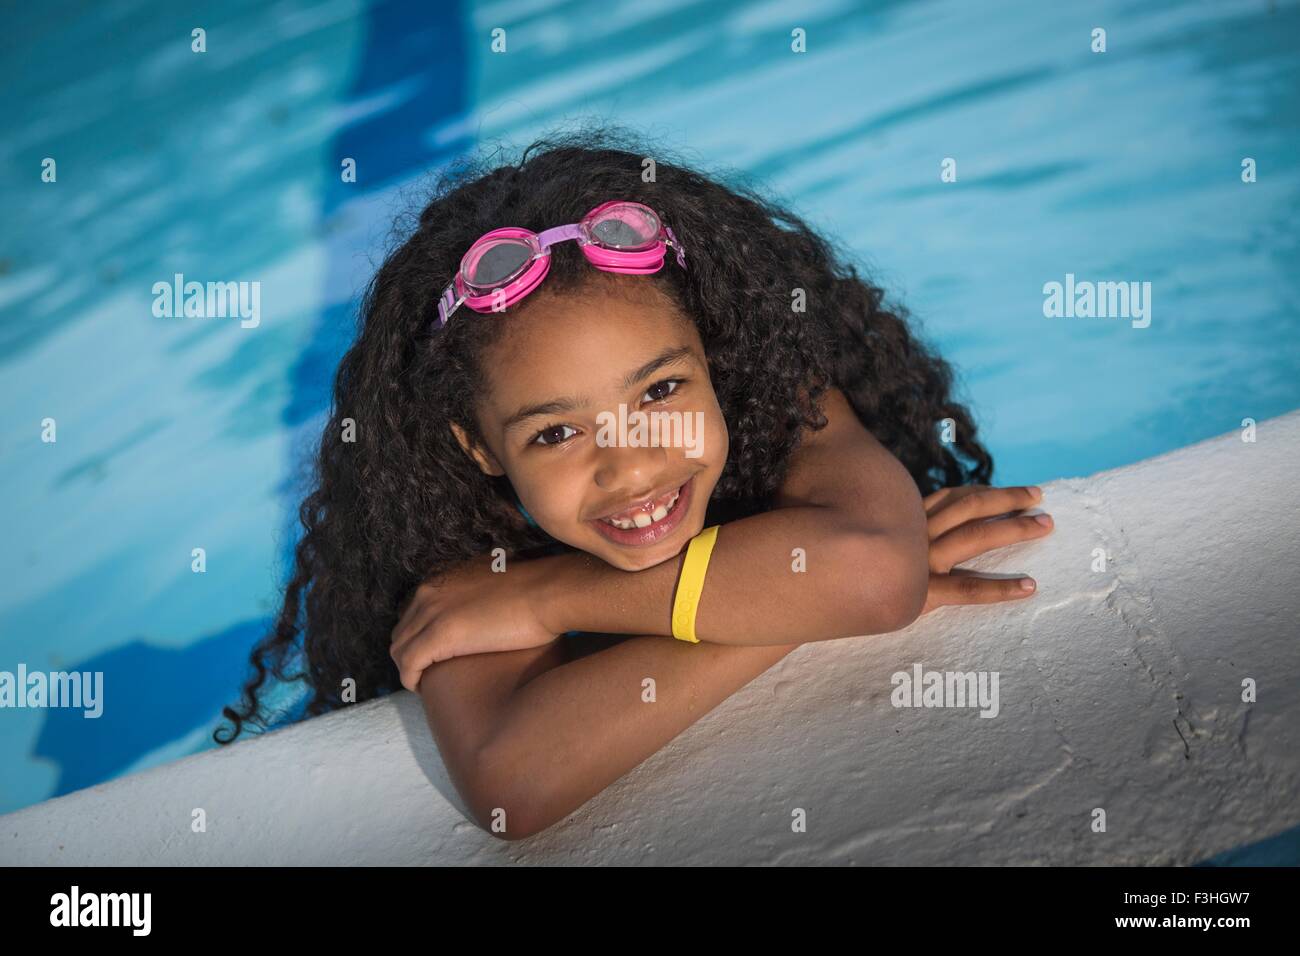 Ritratto di ragazza con ricci capelli neri appeso sul bordo della piscina, guardando alla fotocamera a sorridere Foto Stock